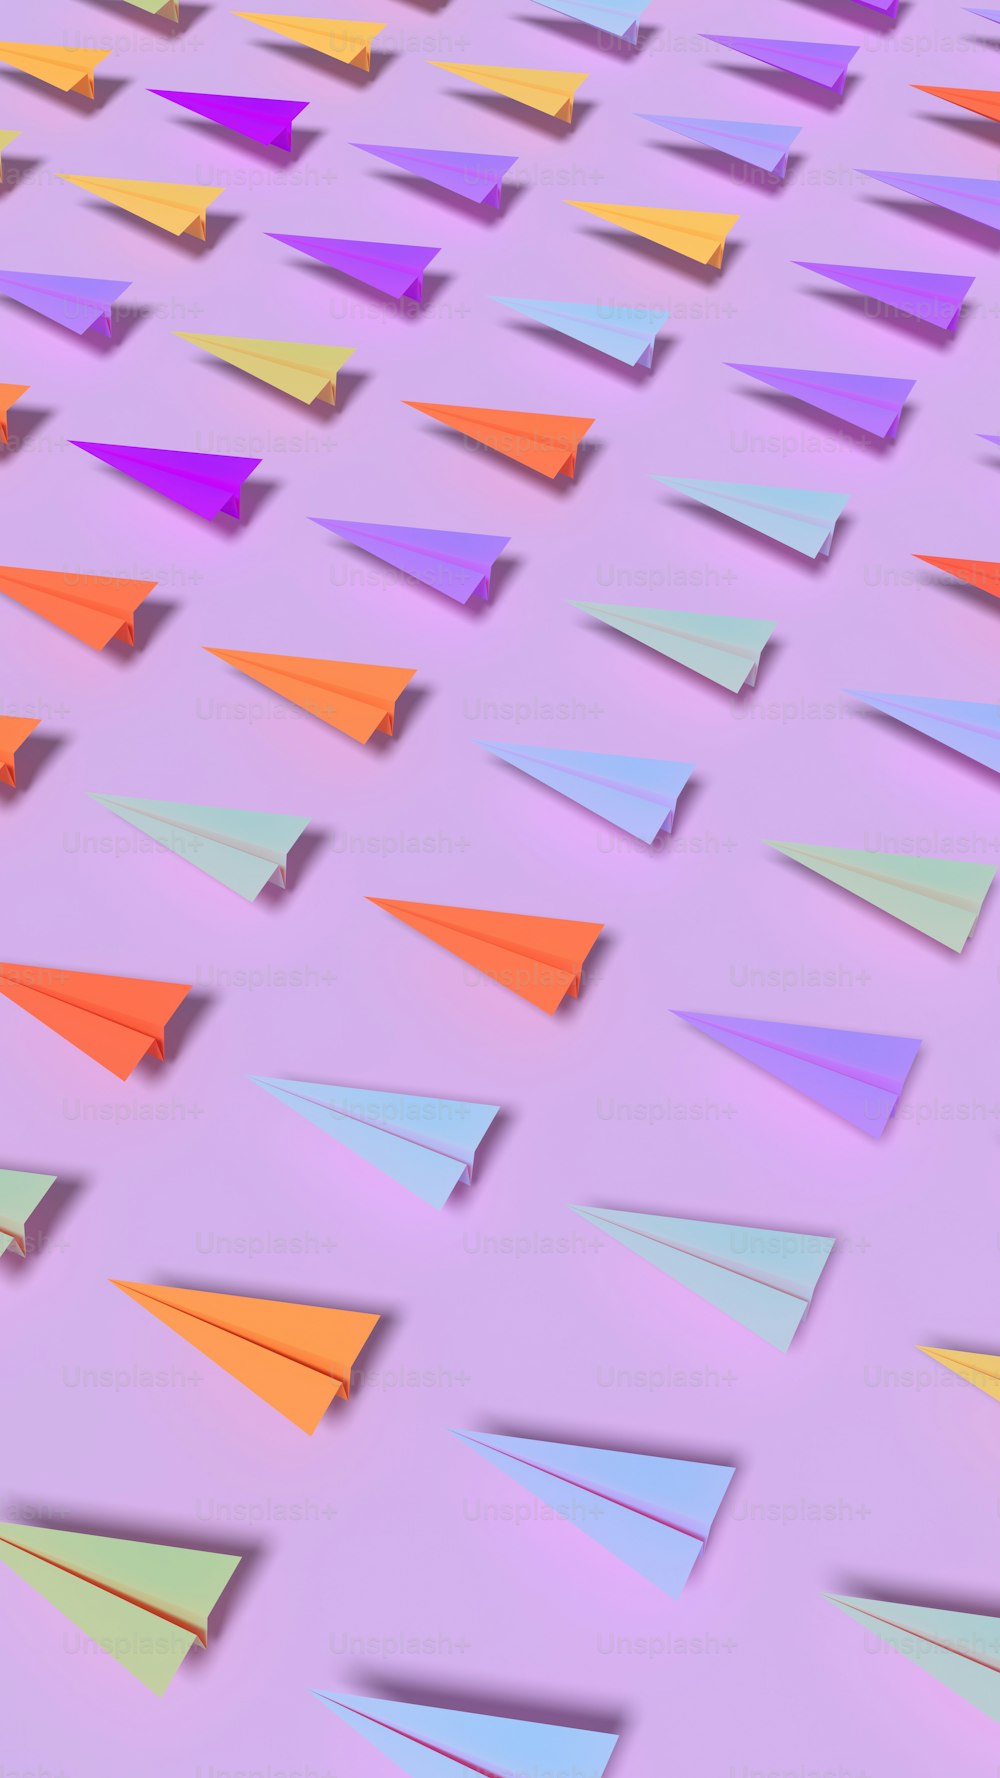 Un groupe d’avions en papier colorés sur fond violet